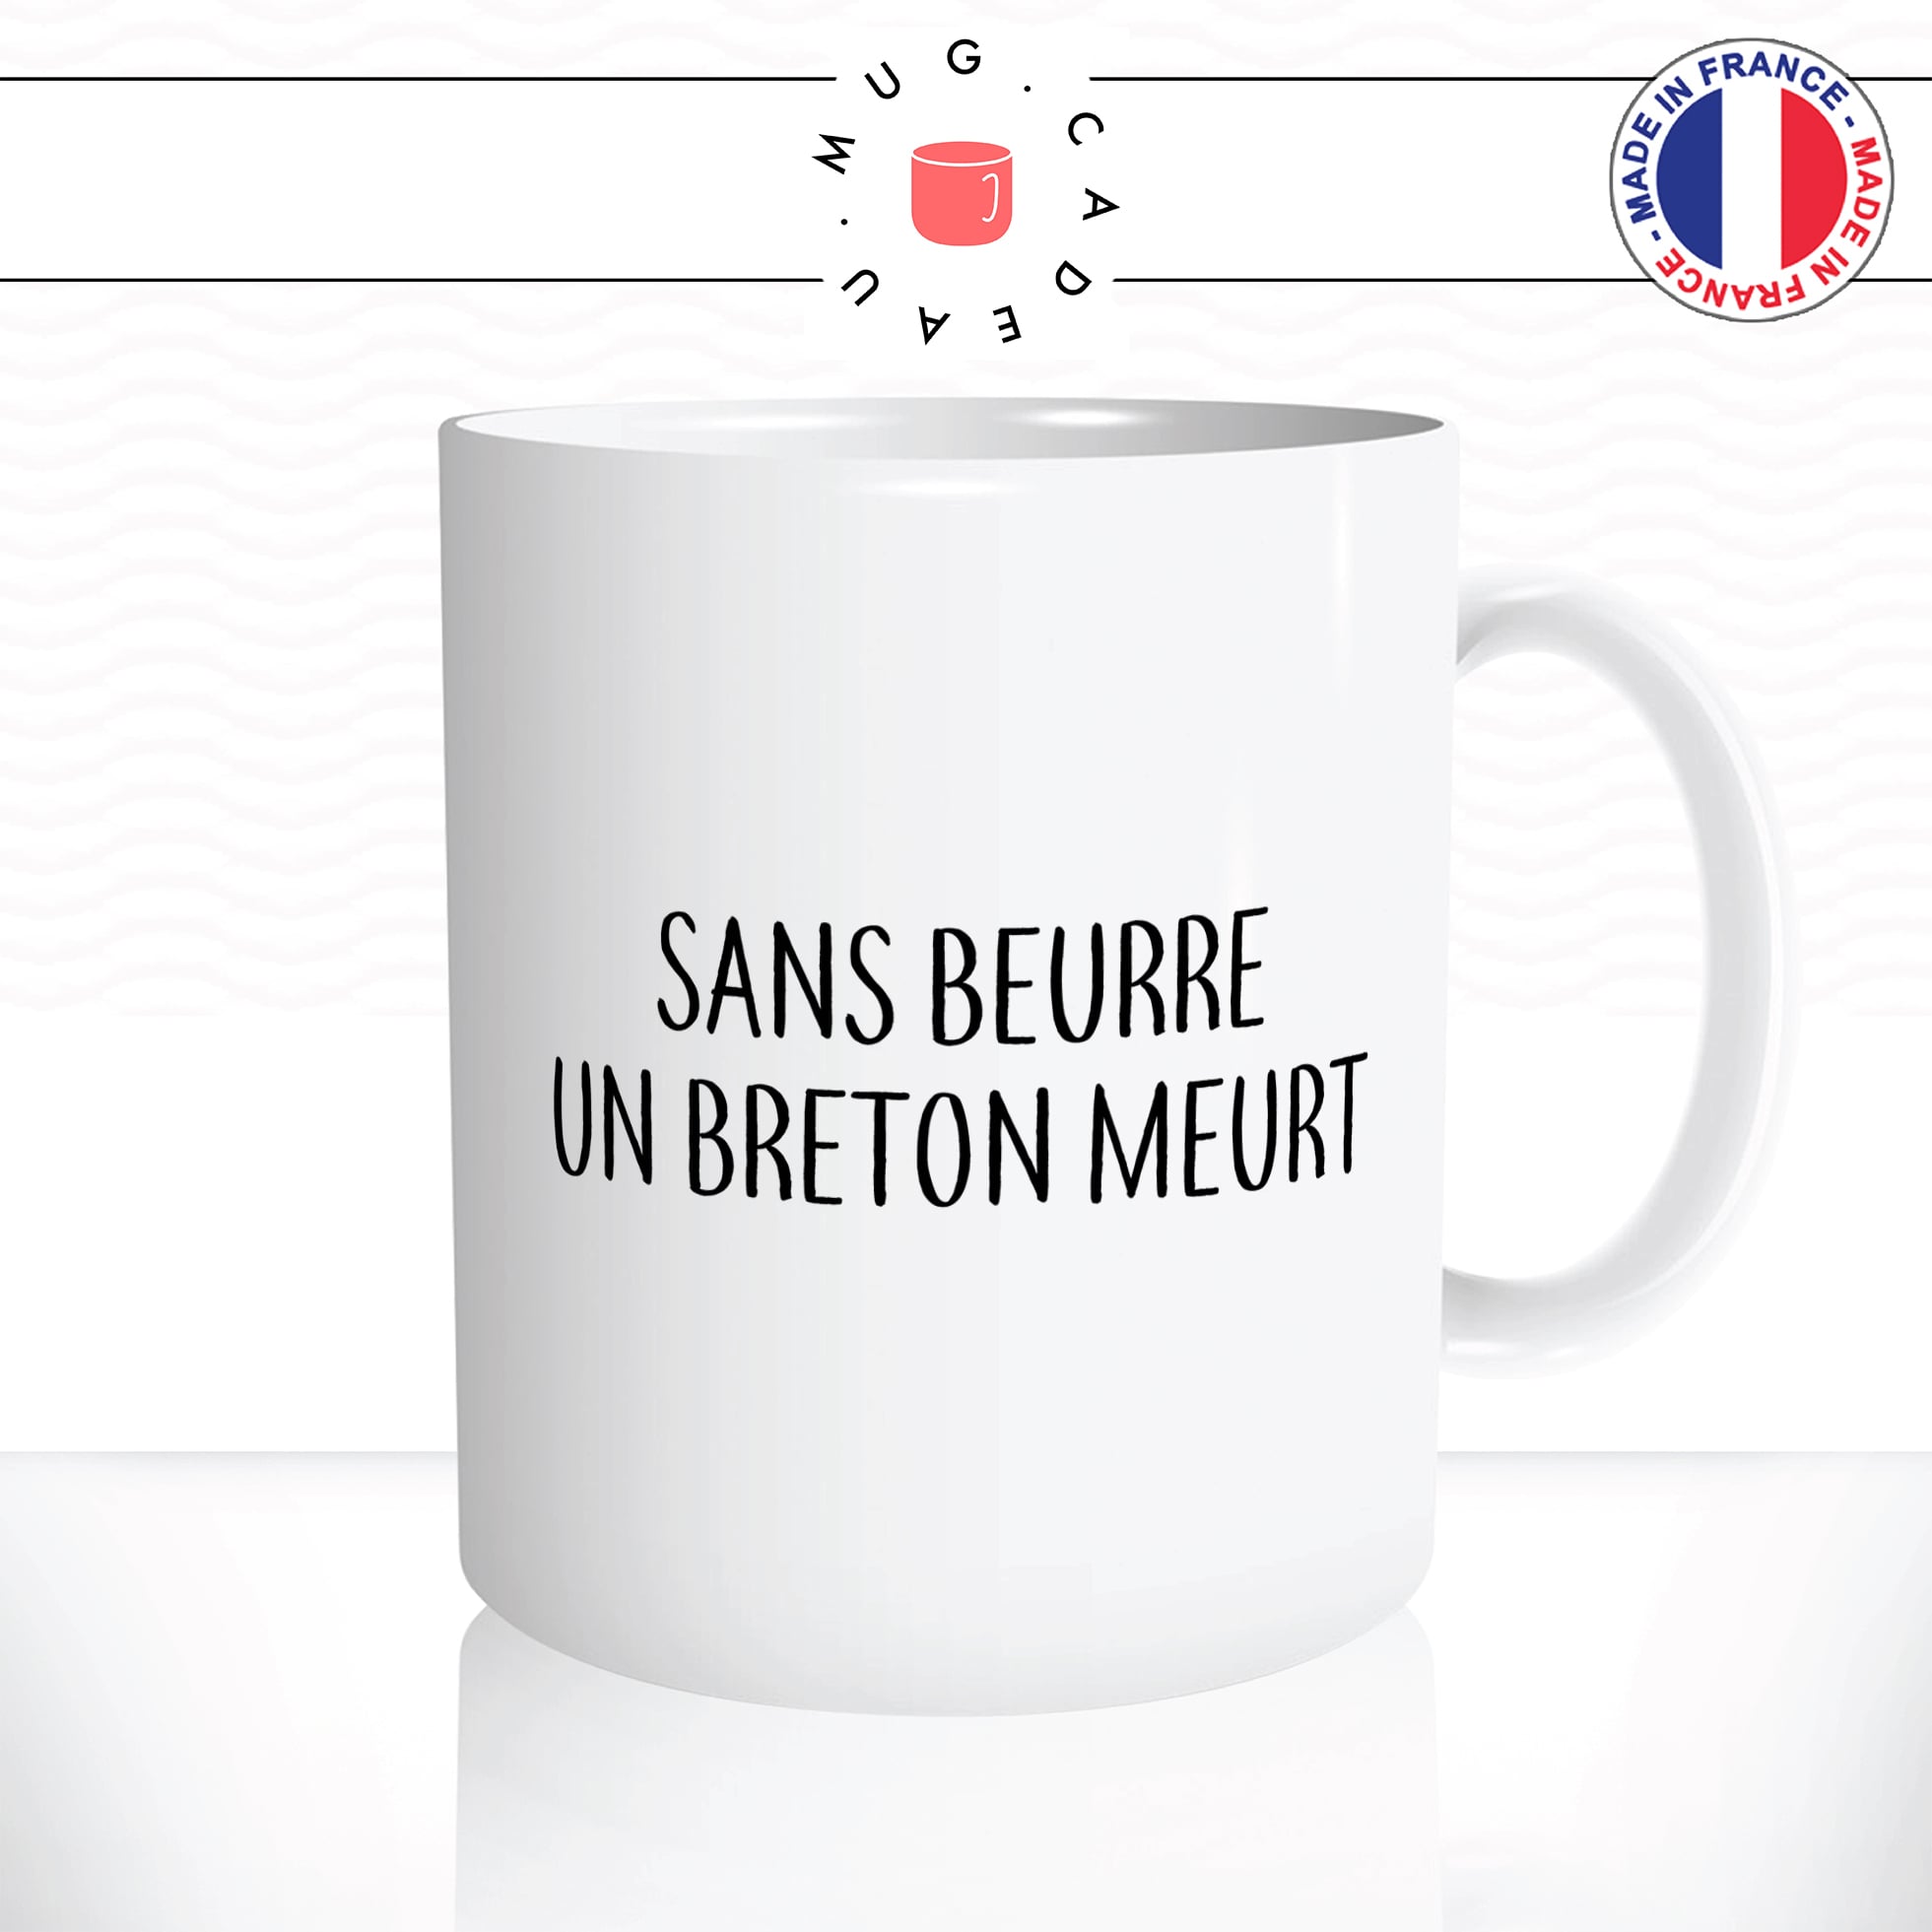 mug-tasse-sans-beurre-un-breton-meurt-sel-beurre-salé-bretagne-drole-humour-fun-café-thé-idée-cadeau-originale-personnalisée2-min